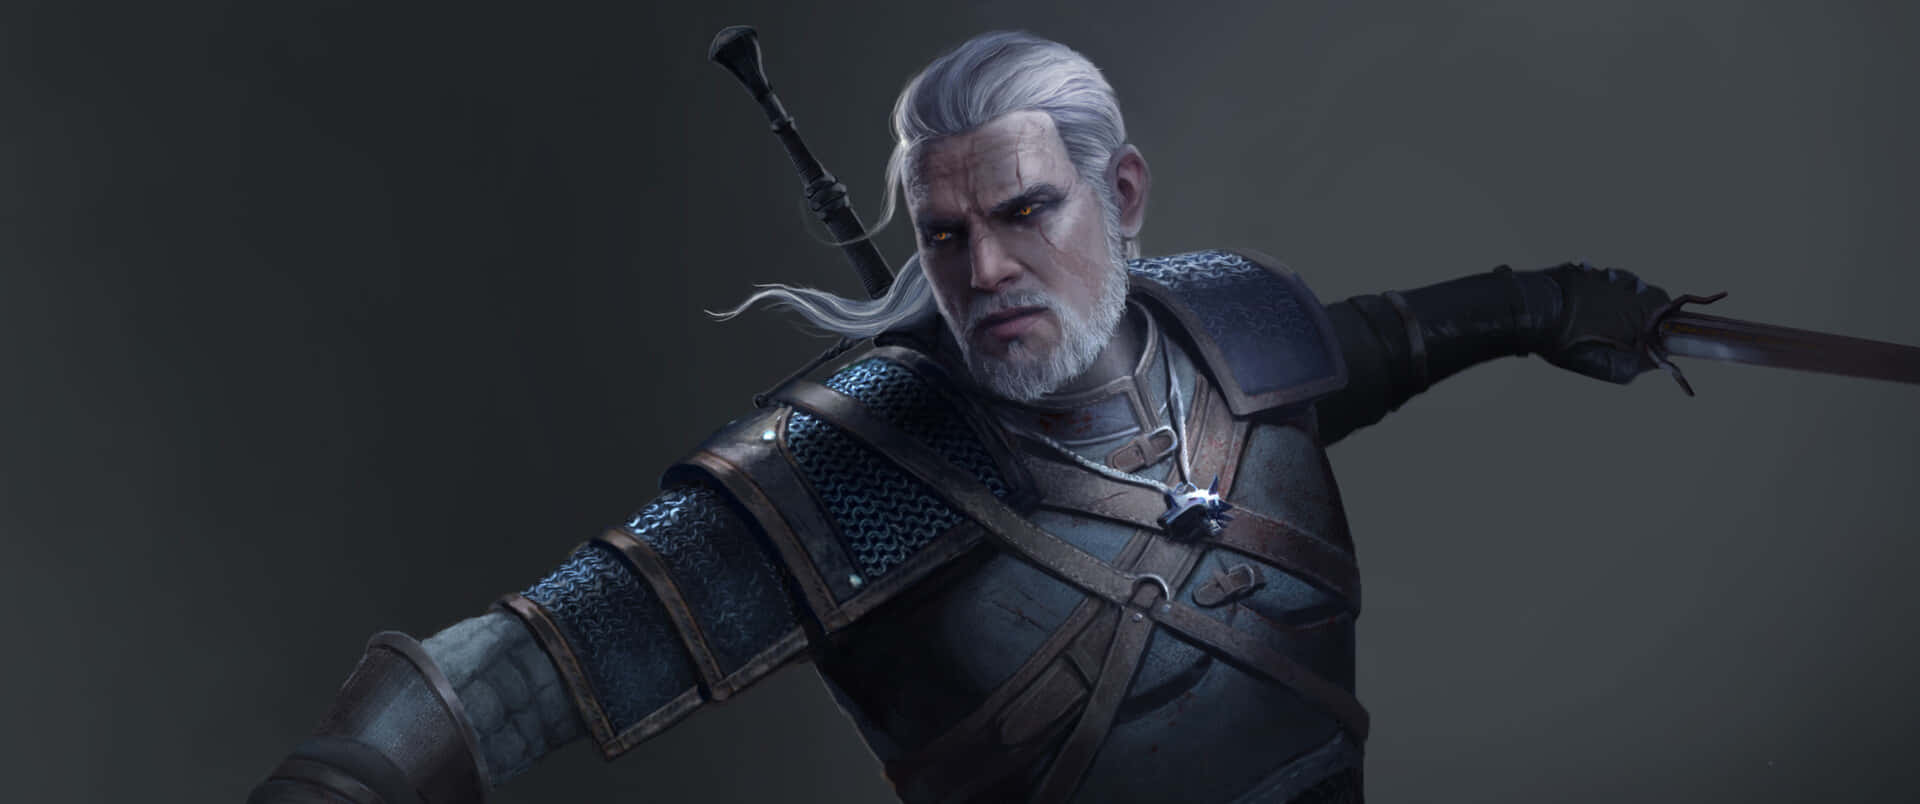 Geraltav Rivia, Häxeriprotagonisten I Den Populära Videospeleserien The Witcher, I All Sin Härlighet. Wallpaper